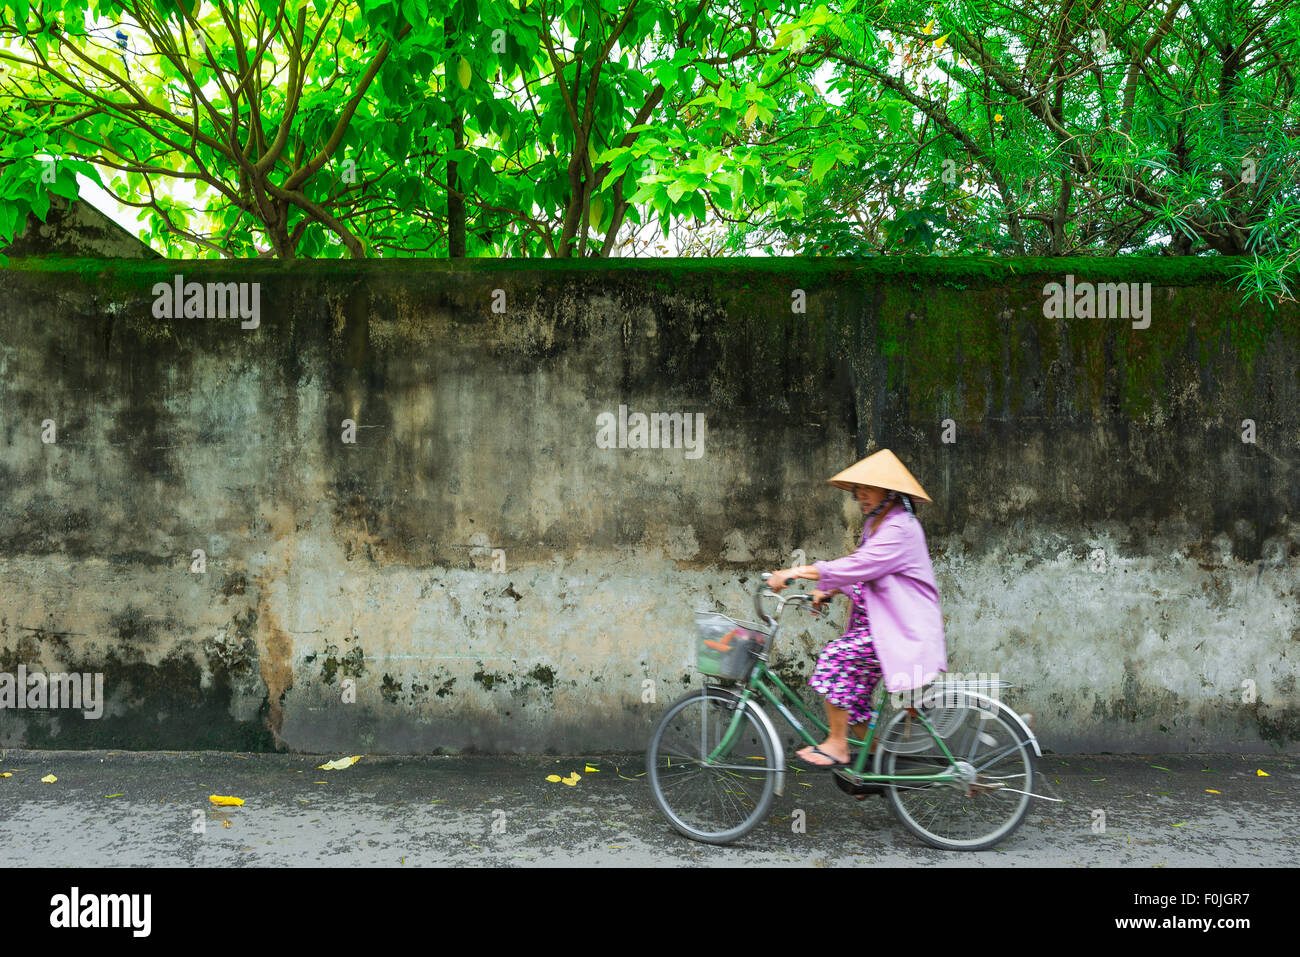 Vietnam Femme cycliste, vue d'une femme vietnamienne âgée portant un chapeau conique et habillée en vélo rose le long d'une rue à Hoi an, au centre du Vietnam. Banque D'Images